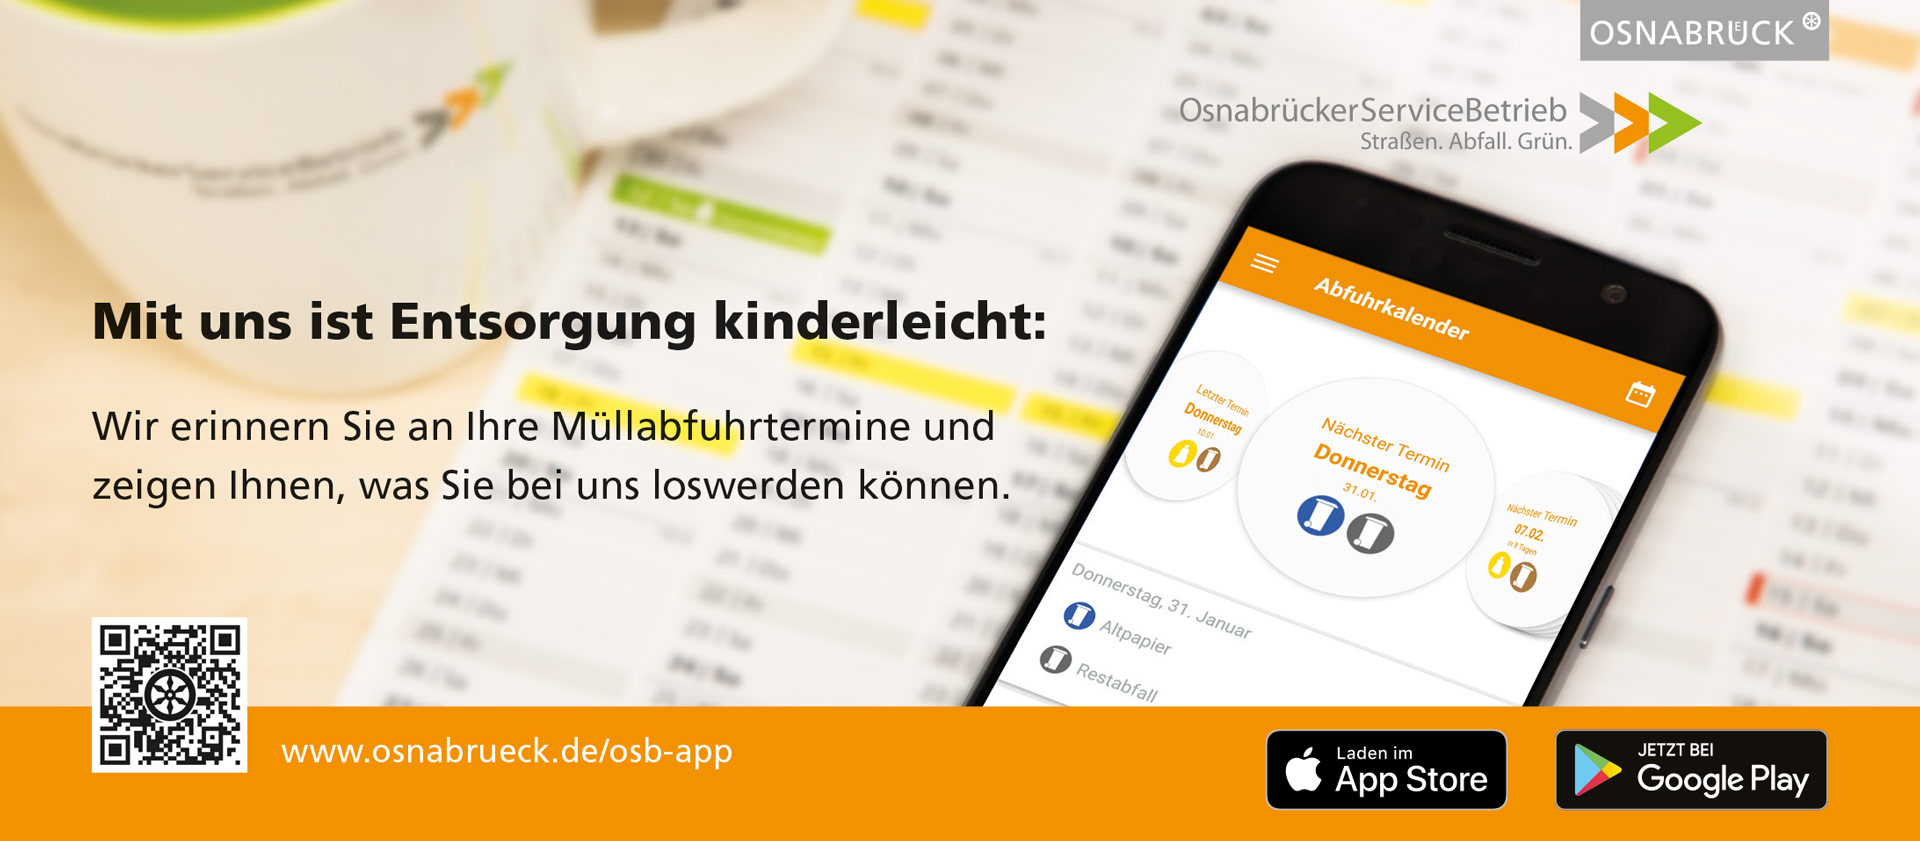 Mit uns ist Entsorgung kinderleicht – die App des Osnabrücker ServiceBetriebs.